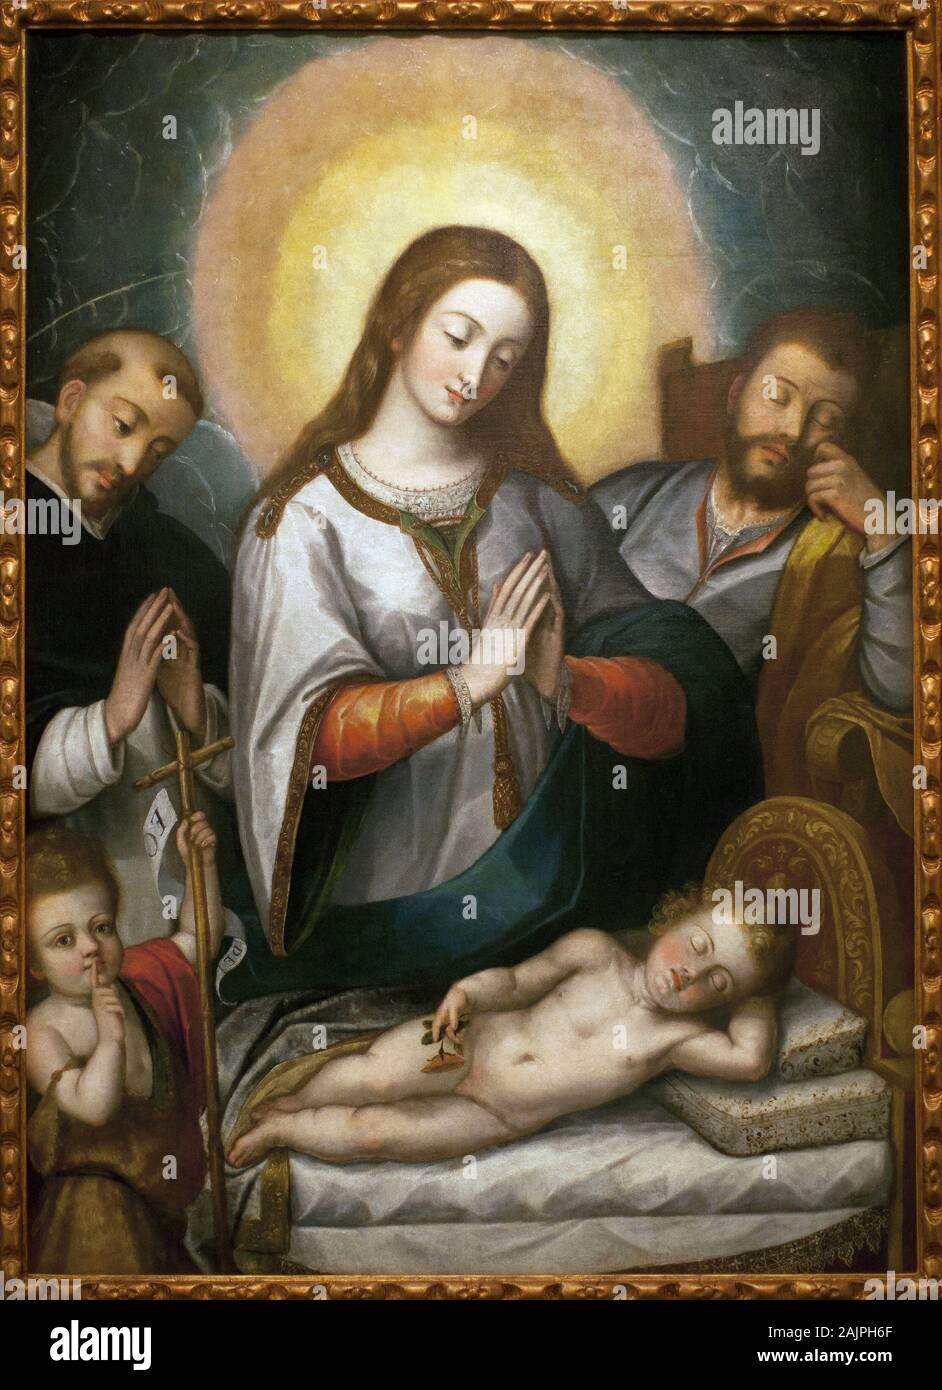 La Sainte Famille avec Saint Jean Baptiste et Saint Dominique. Peinture de Angelino Medoro (1576-1633), Huile sur toile, 1622. Musee des Beaux Arts de Foto Stock